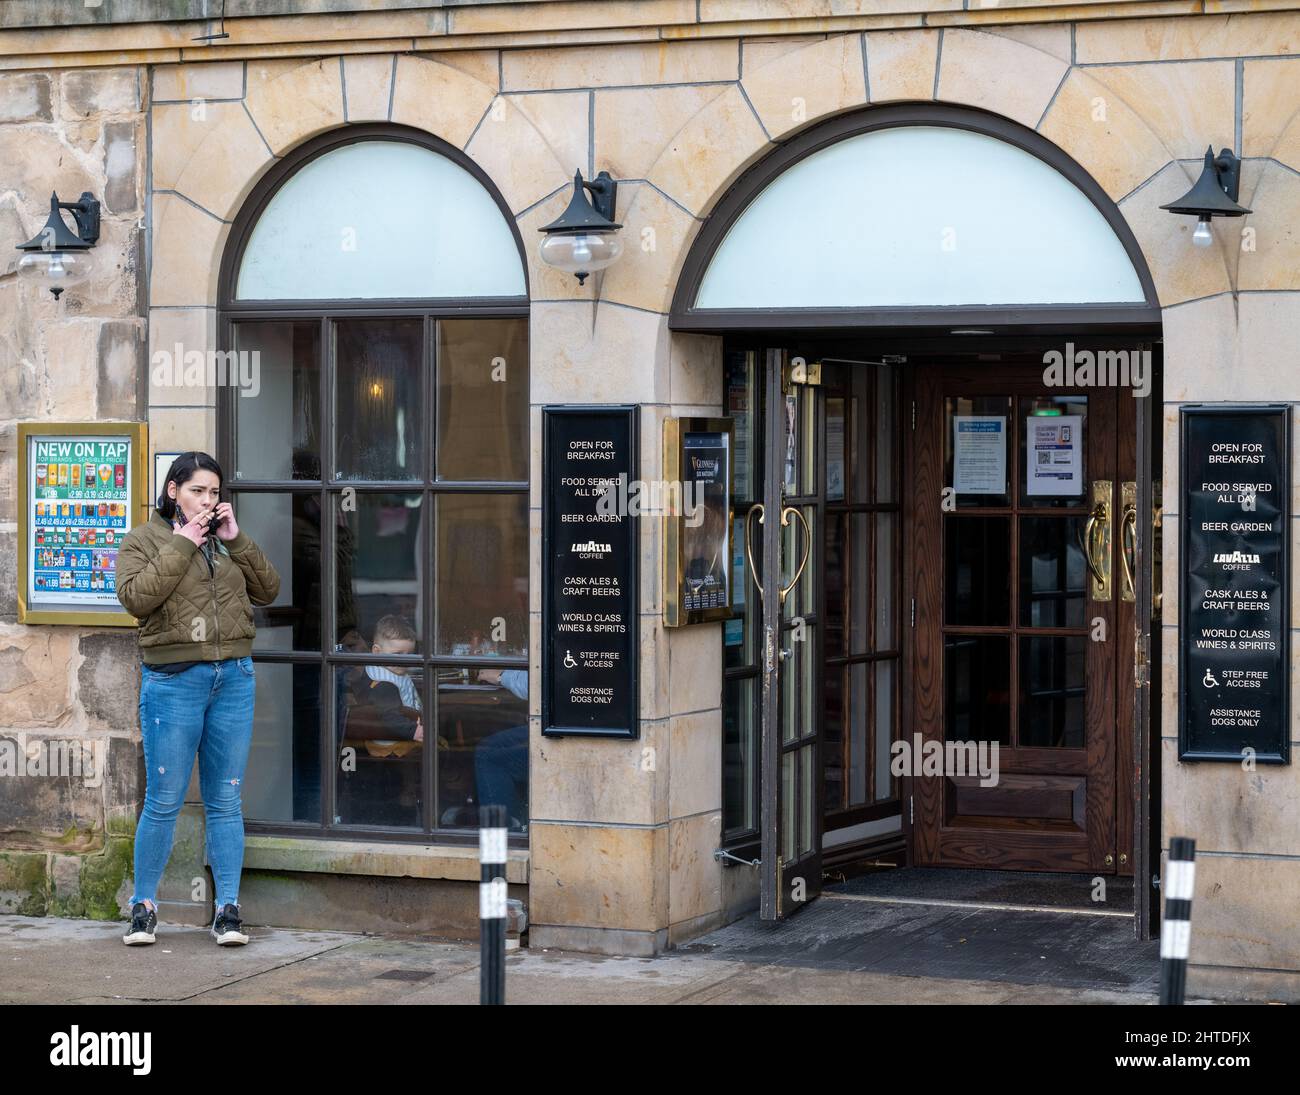 25 février 2022. High Street, Elgin, Moray, Écosse. C'est une femme qui est allée à l'extérieur du Pub pour avoir une fumée tout en bavardant sur son téléphone mobile Banque D'Images